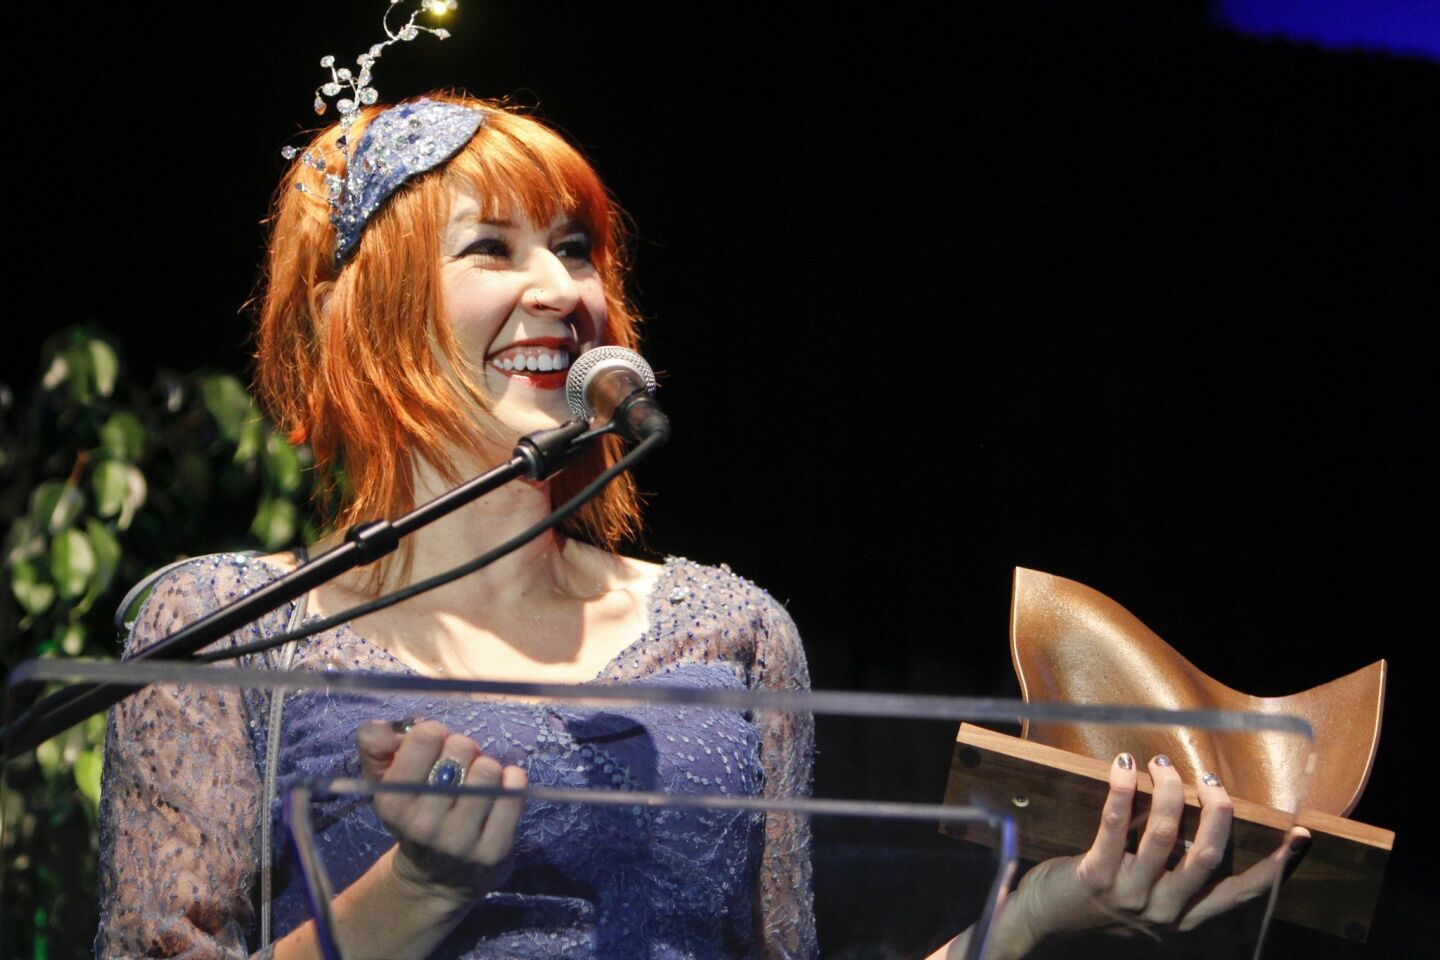 Winner of Best Singer Songwriter Gayle Skidmore receives her award.